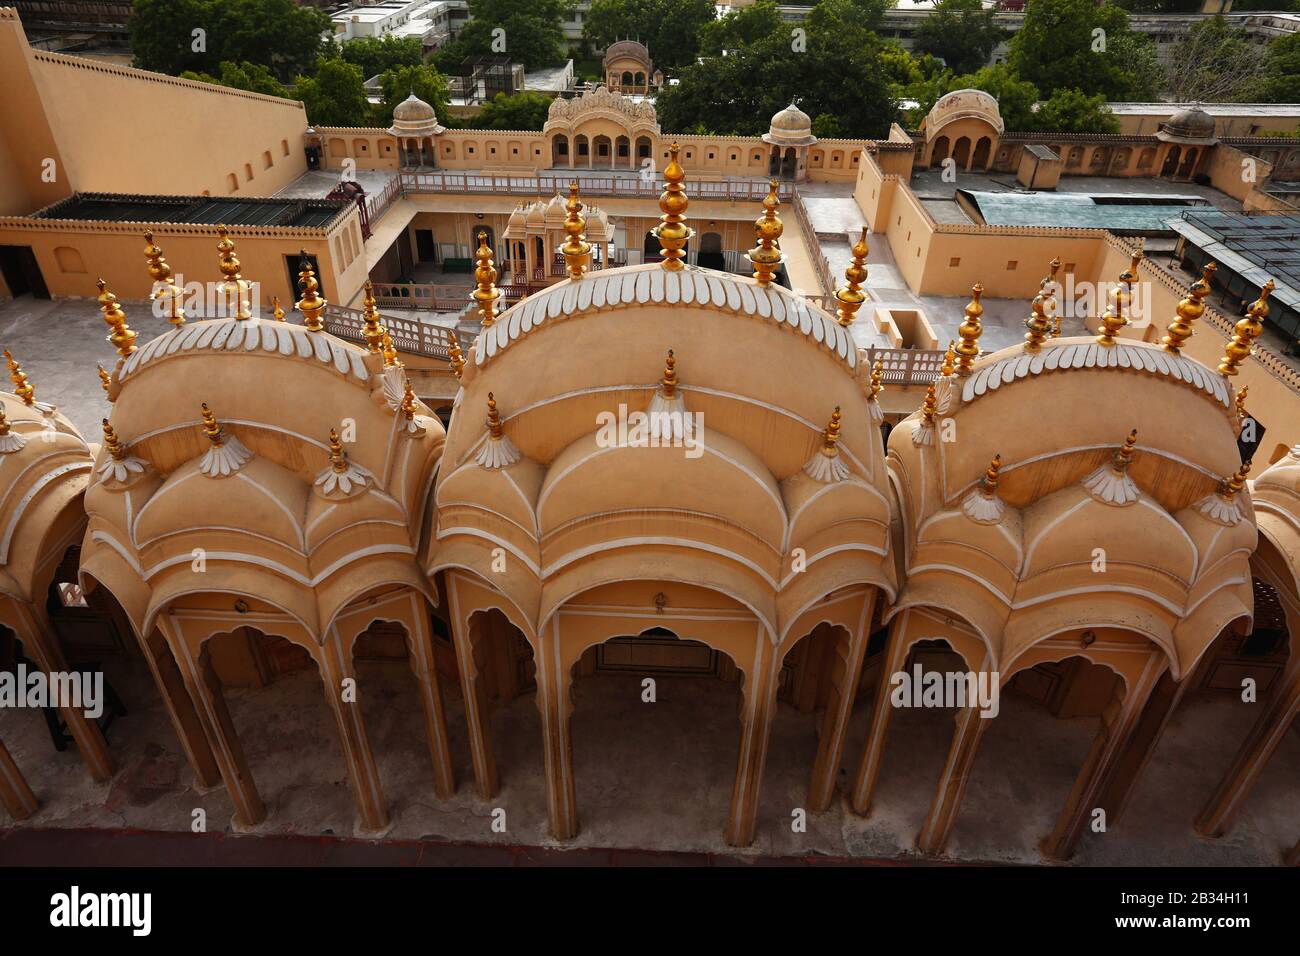 Vue de dessus, Palais des vents, Hawa Mahal, Jaipur, Rajasthan, Inde Banque D'Images